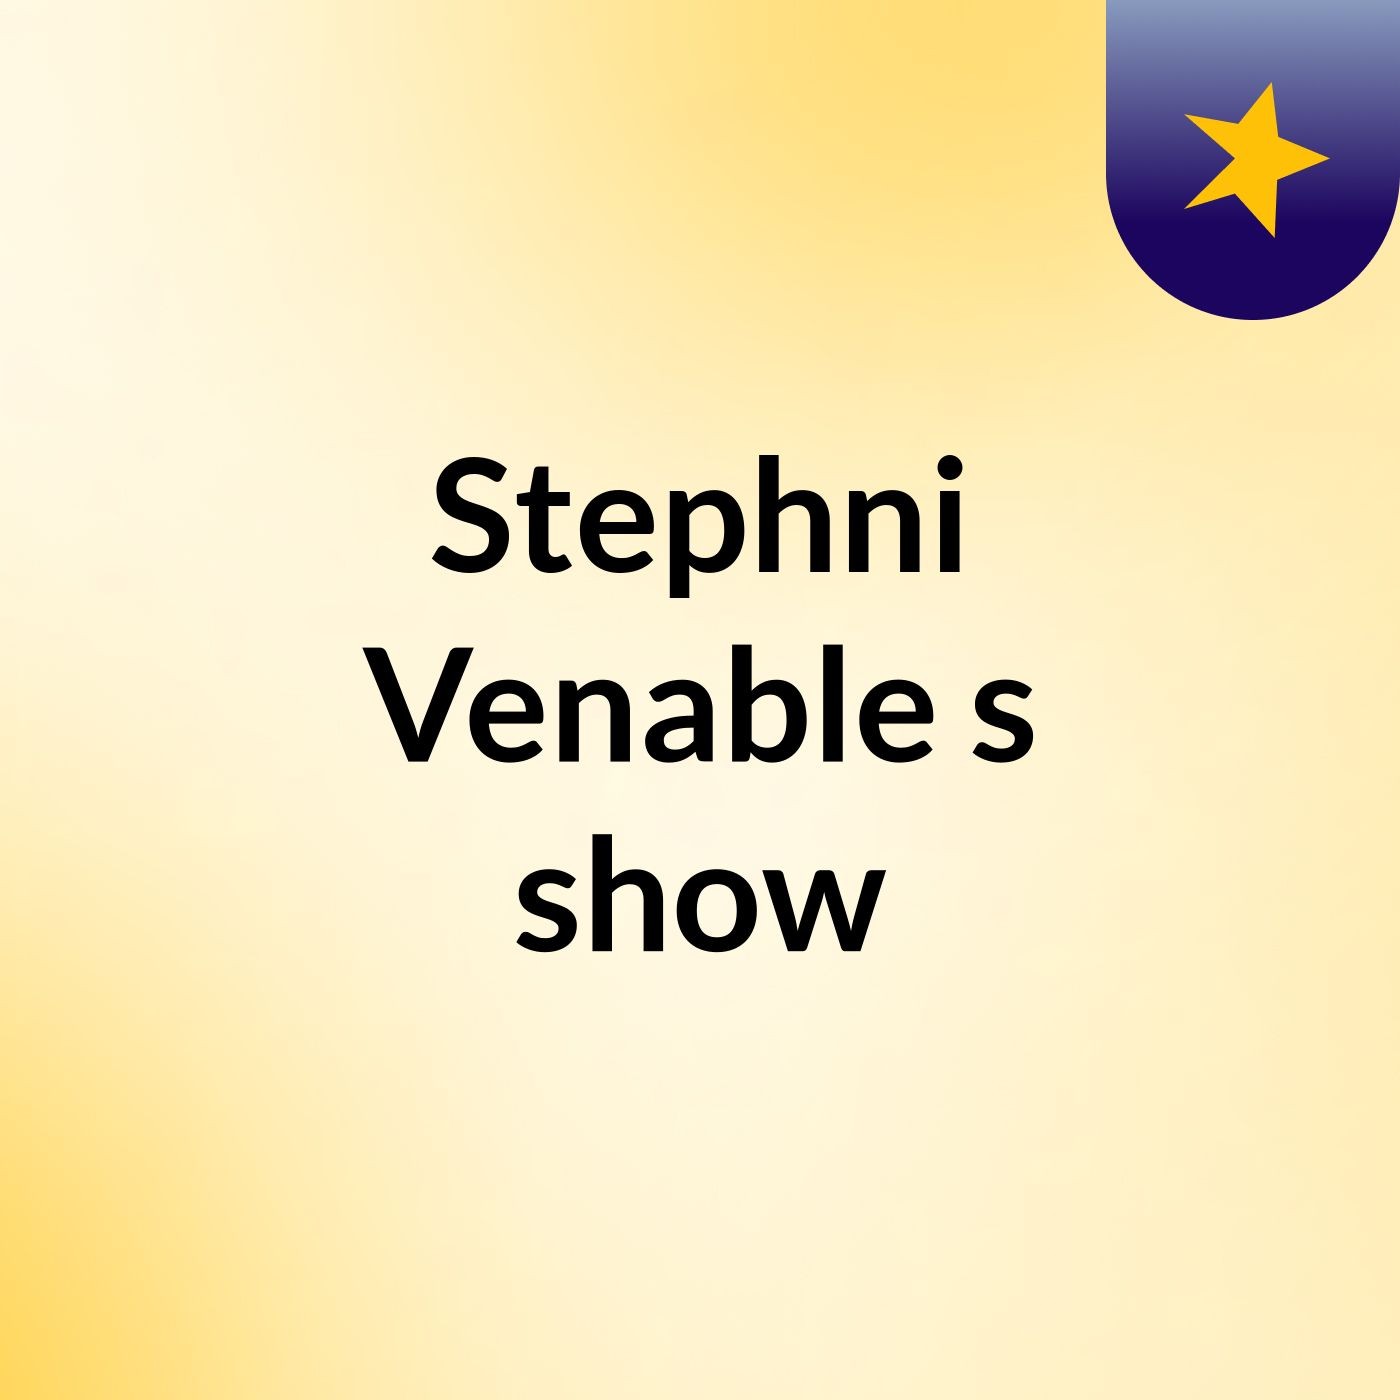 Stephni Venable's show